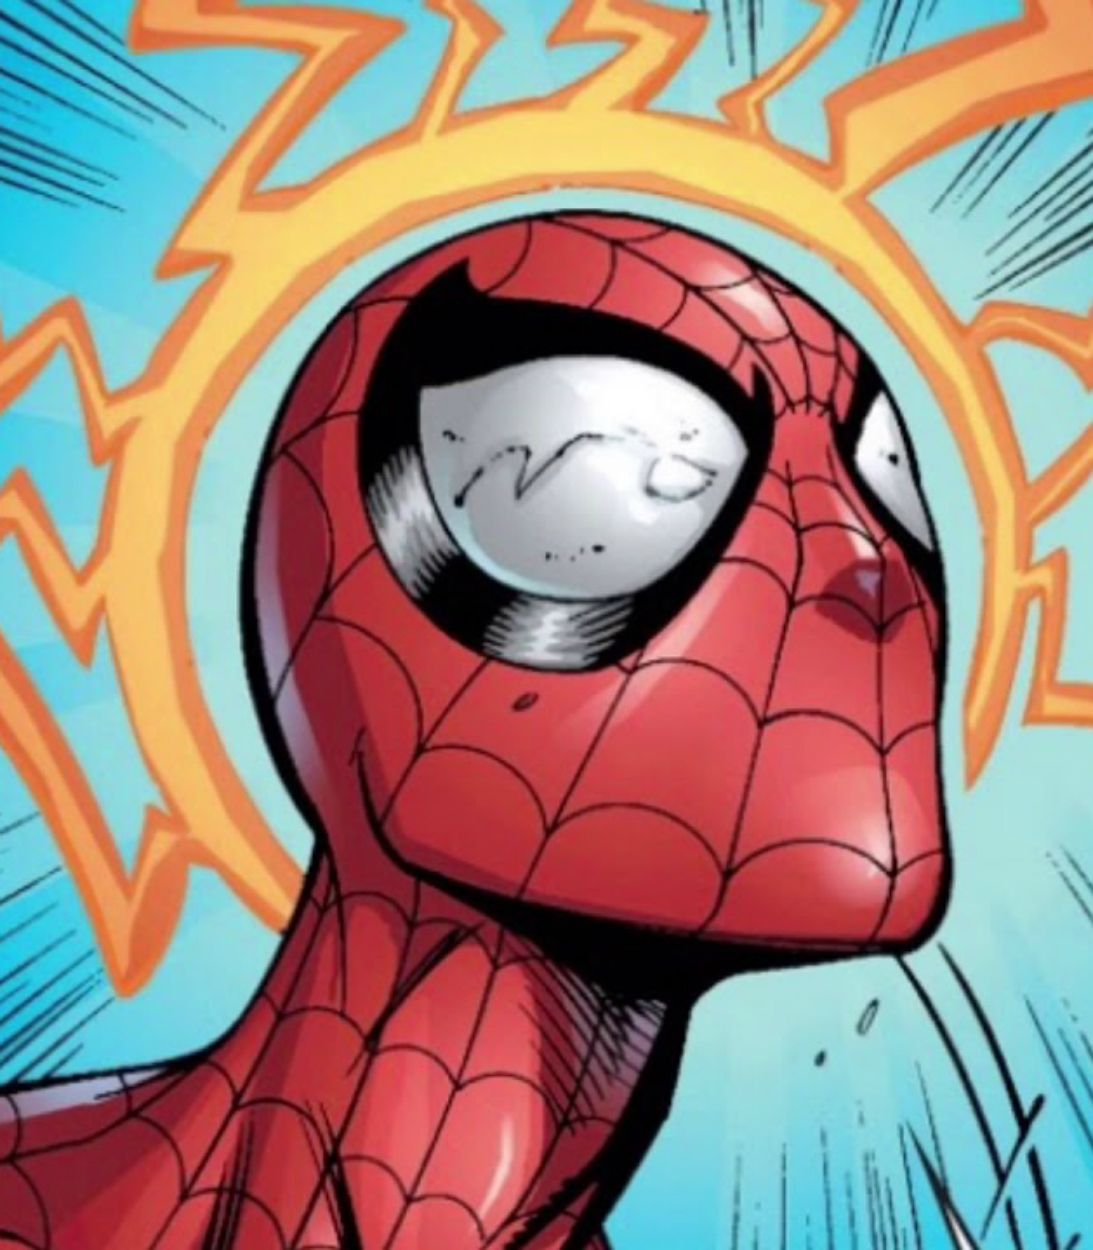 Spider-Man spider-sense Vertical